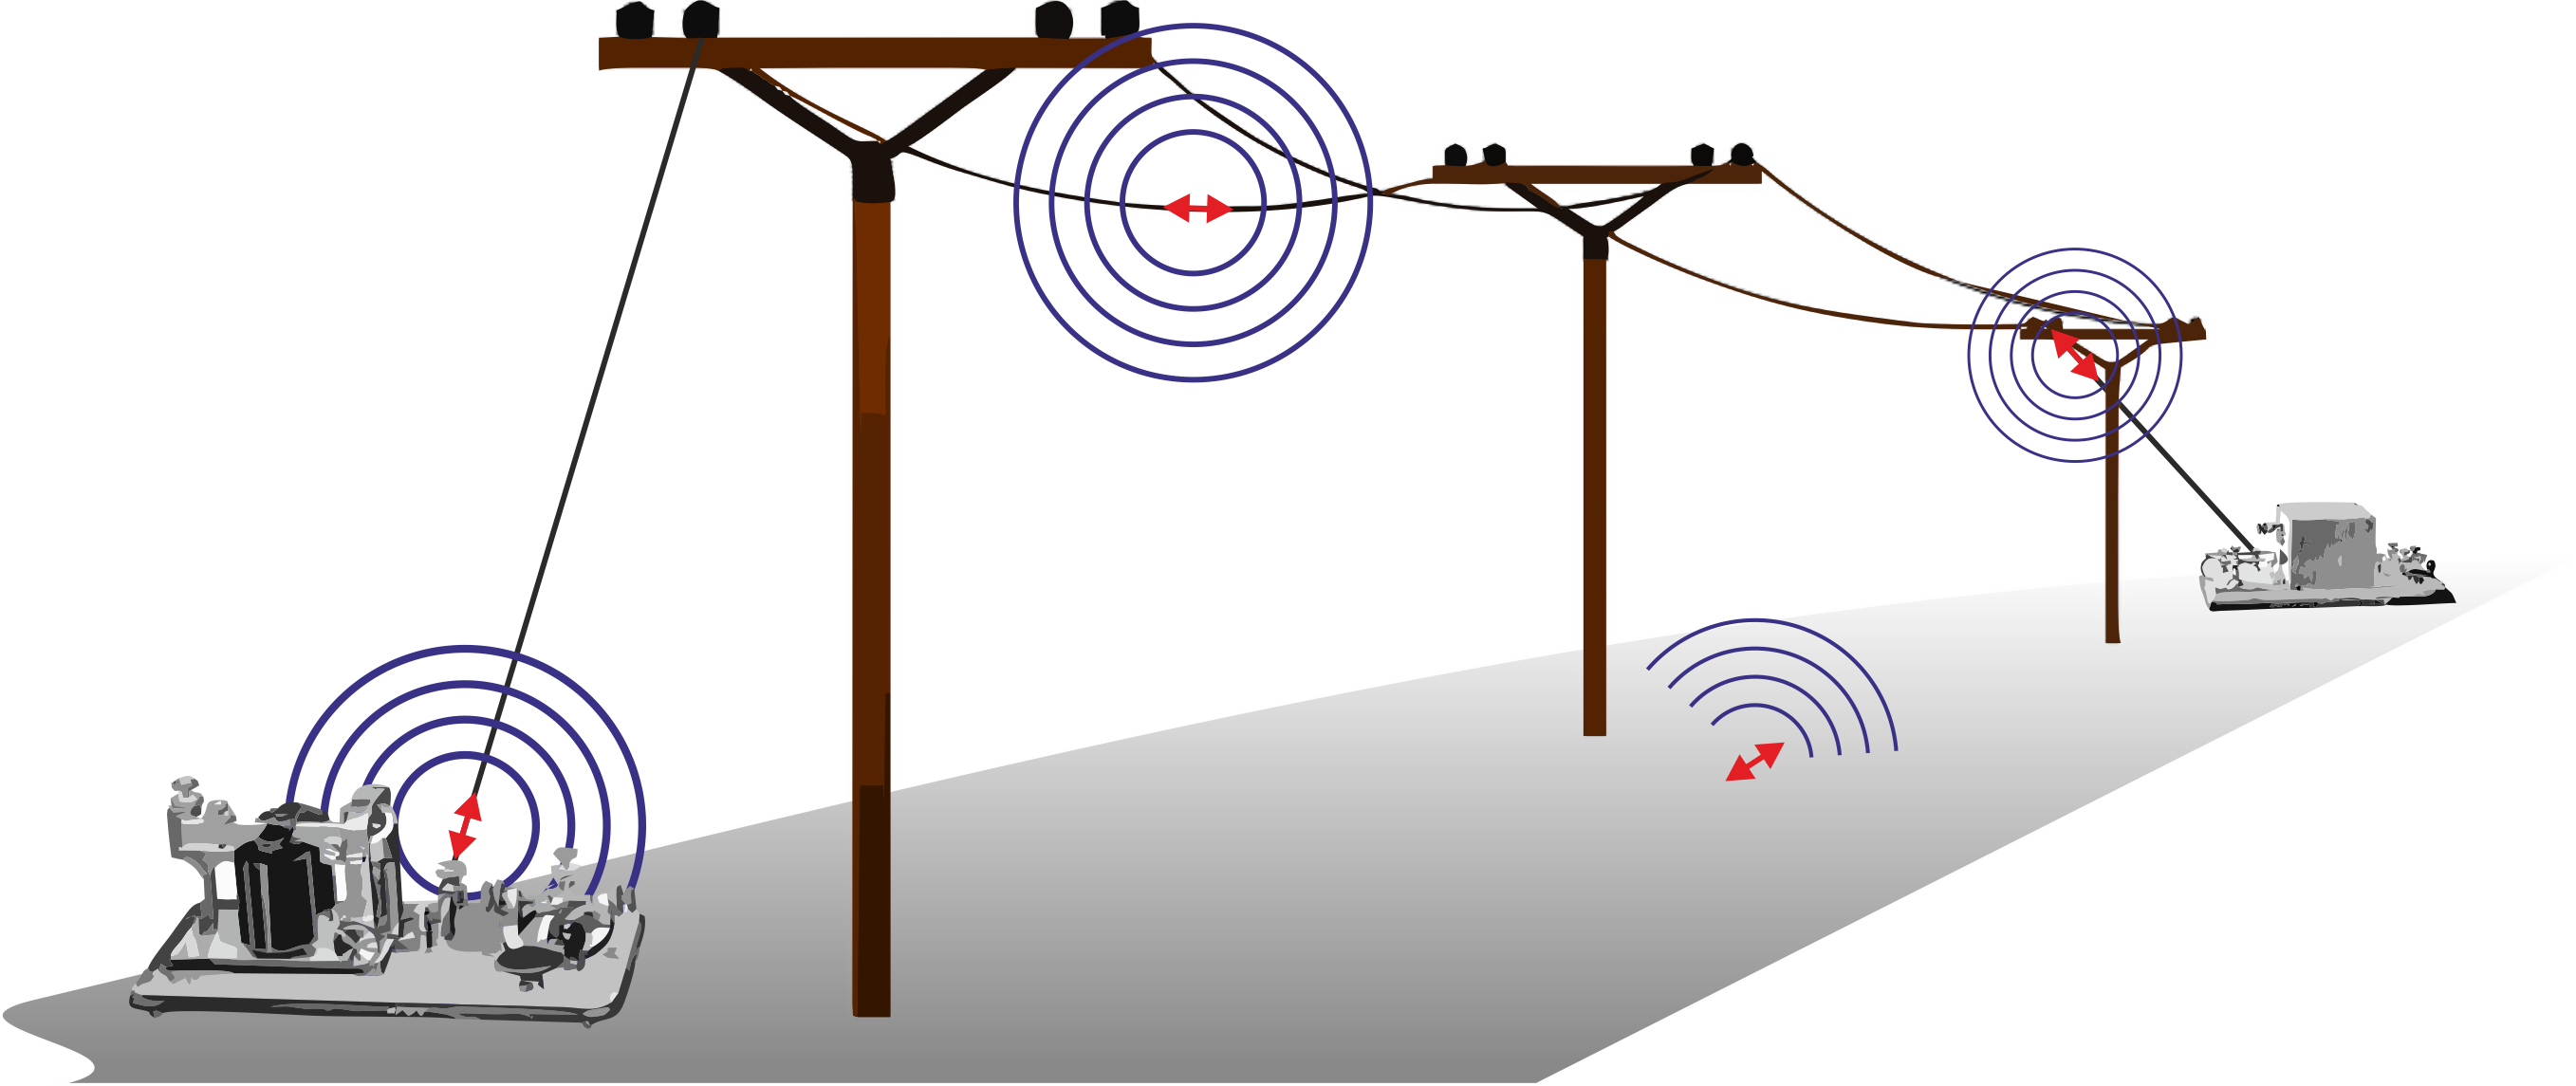 Guiando ondas electromagnéticas (I): los cables del telégrafo |  Telecomunicaciones de andar por casa